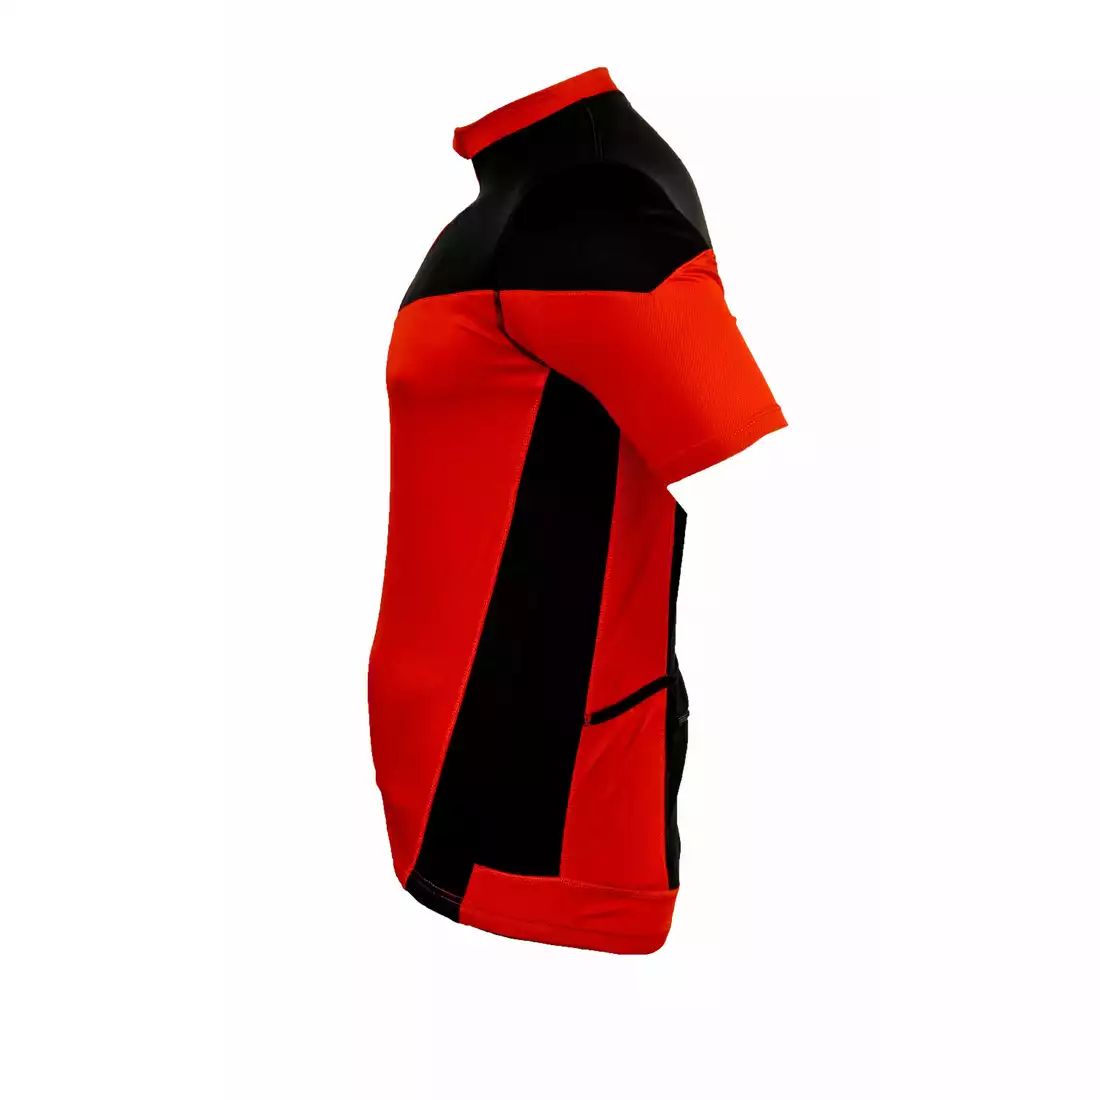 ROGELLI MAZZIN koszulka rowerowa 001.059, Czerwono-czarny